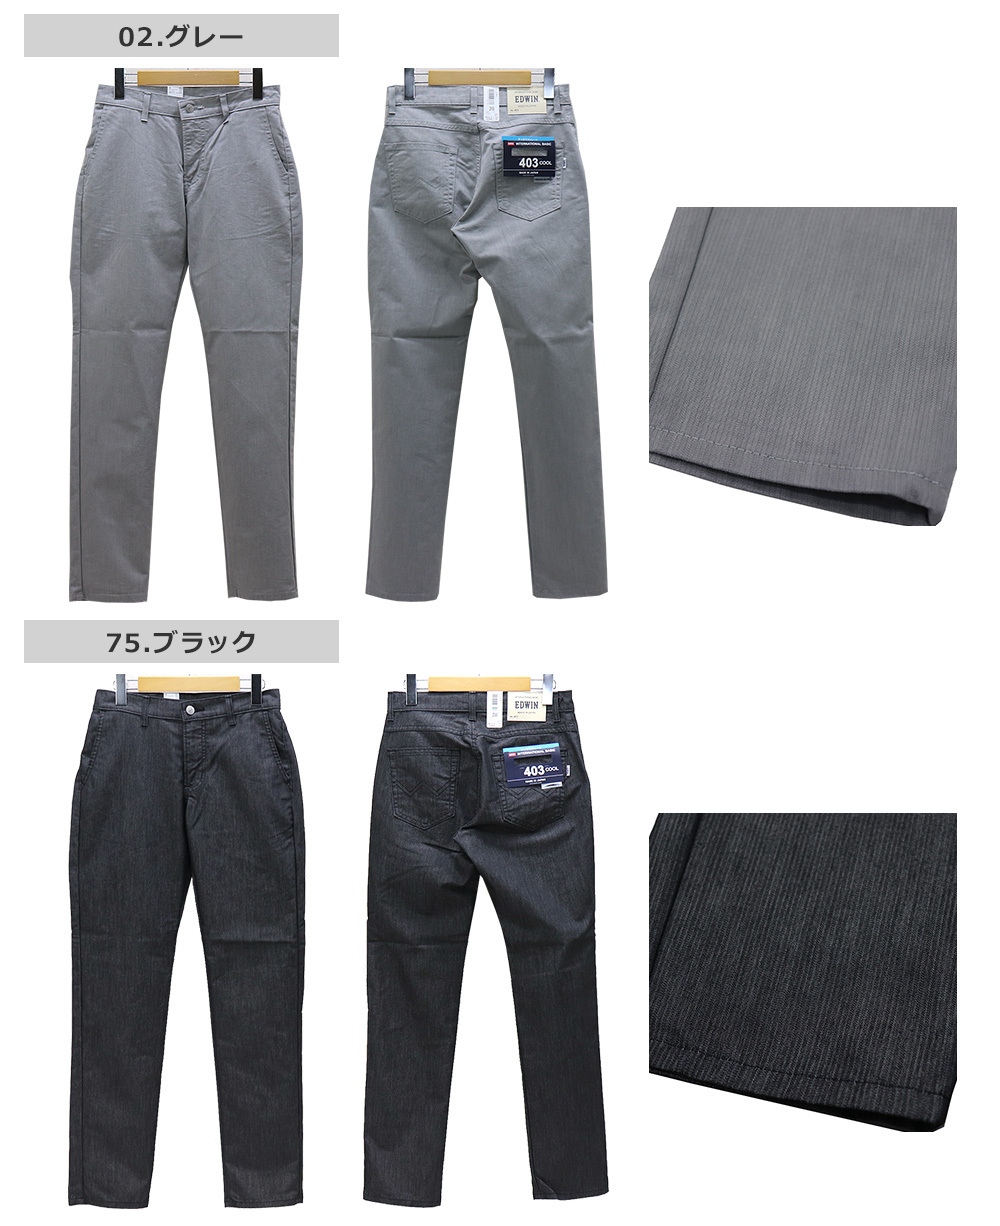 ジャパンフィット カーペンタージーンズ ツールポケット付き メンズ スラックス